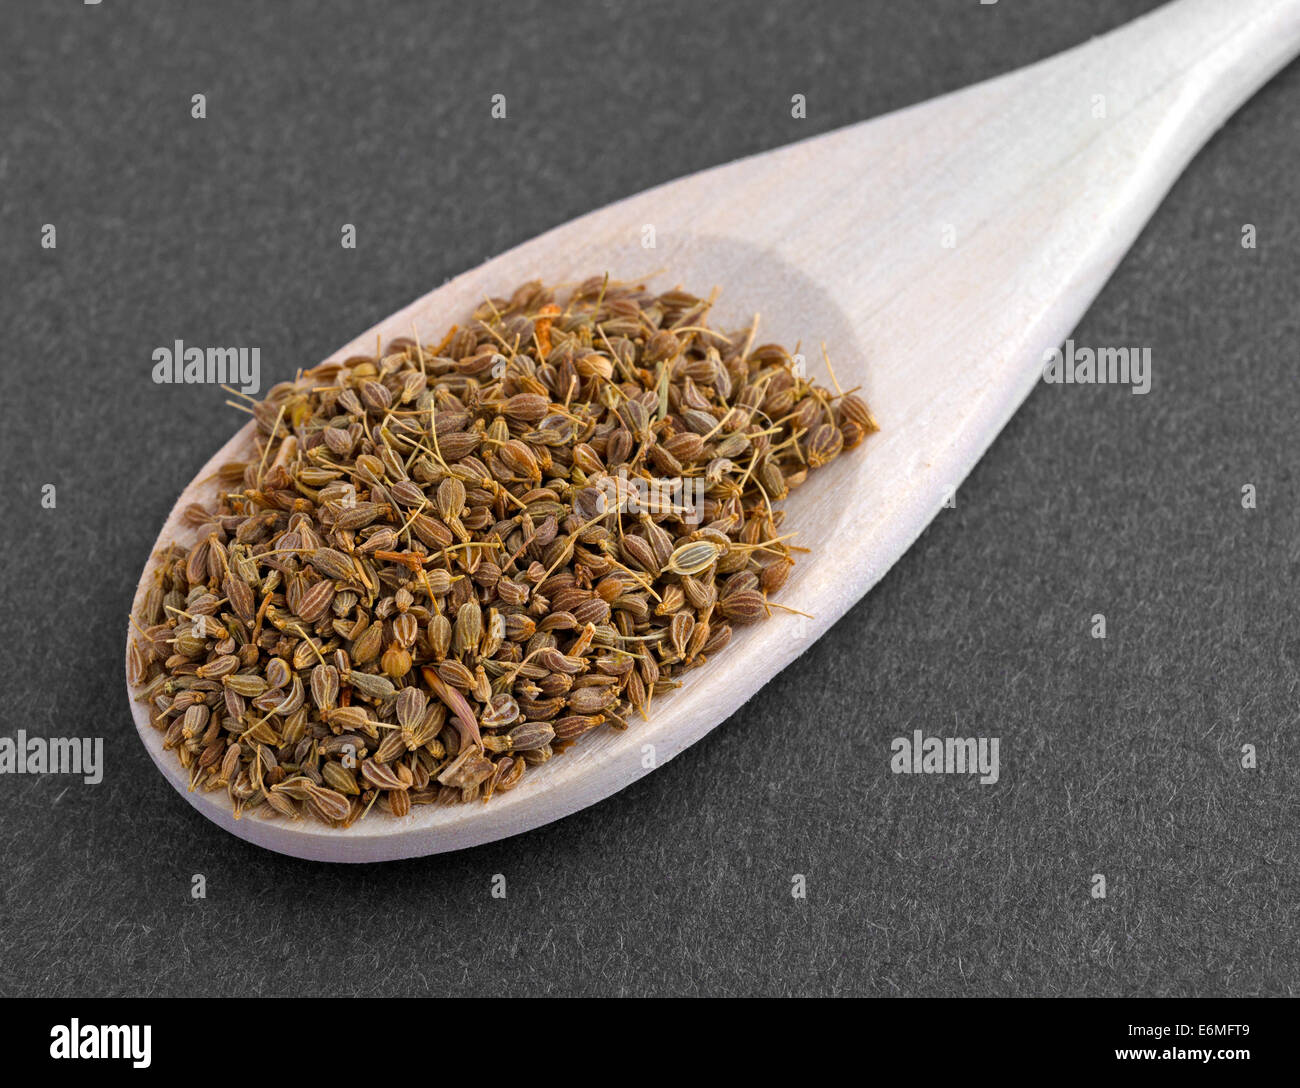 Molto vicino in vista di un cucchiaio di legno riempita con i semi di anice su uno sfondo scuro. Foto Stock